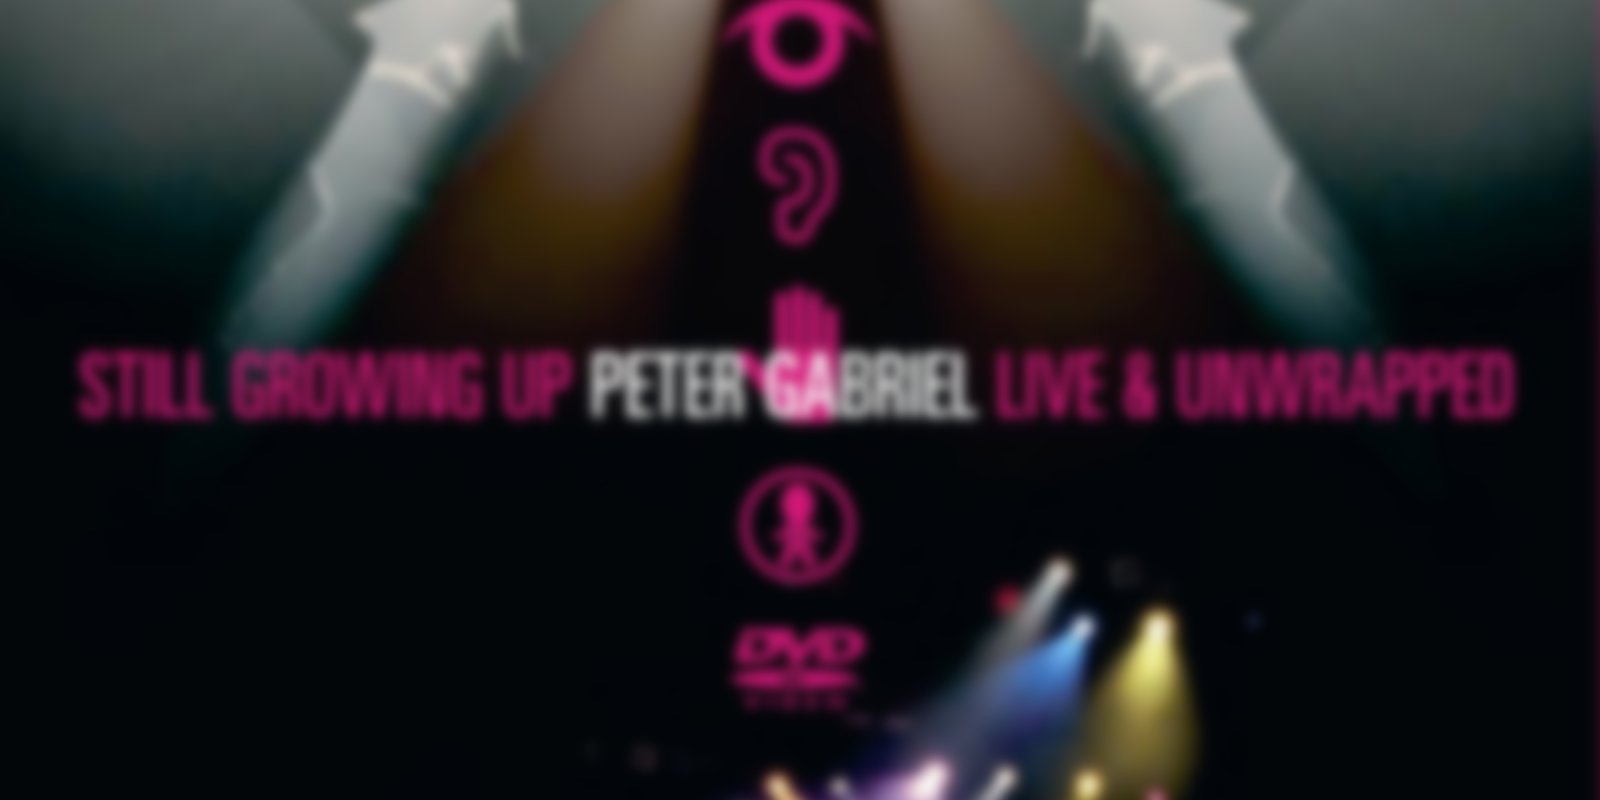 Peter Gabriel - Still Growing Up